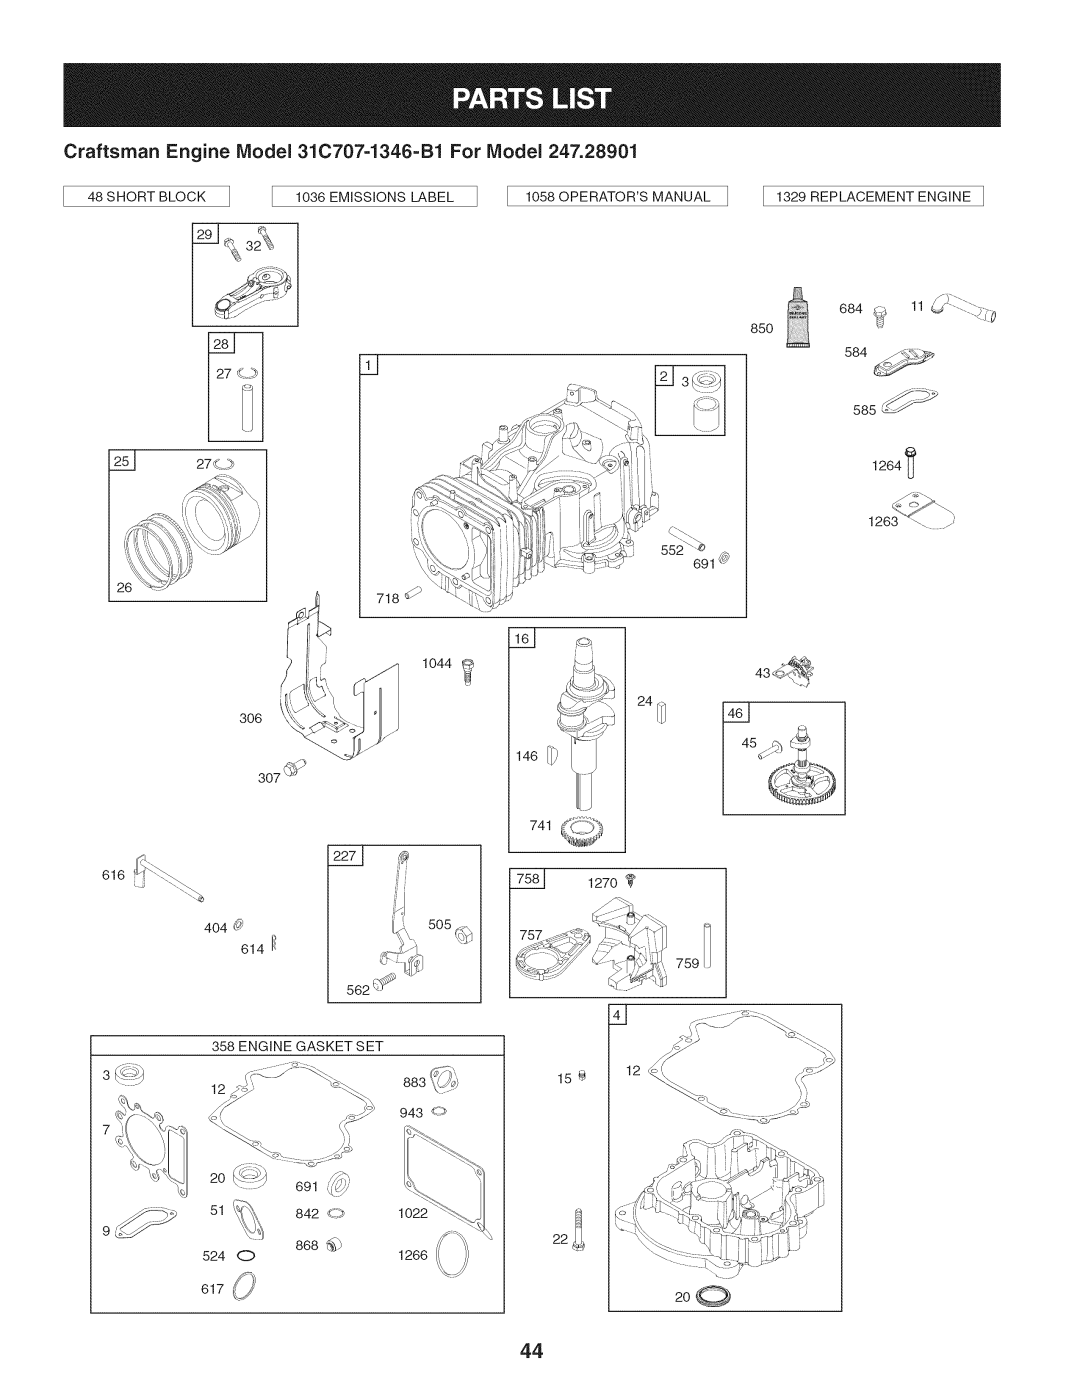 Craftsman 247.28901 manual 2o, 146:_i, 1270, 3_12, Craftsman Engine Model 31C707-1346-B1 For Model, _ ,h:_!> 